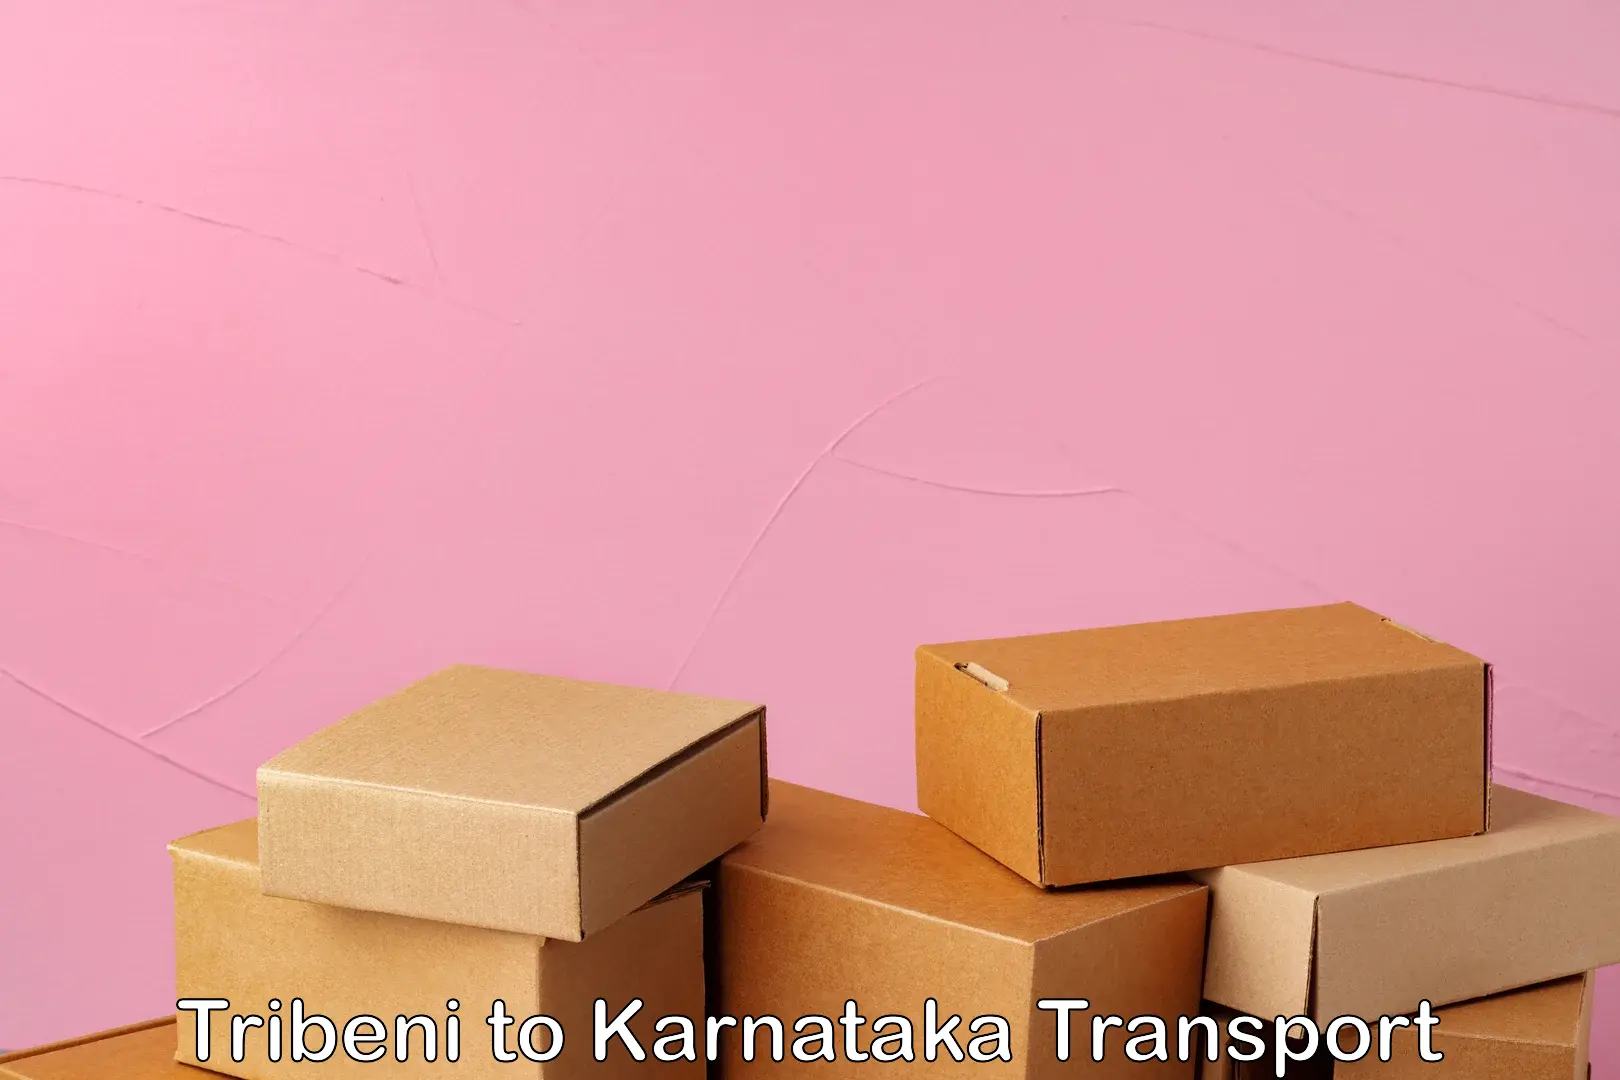 Bike shipping service Tribeni to Karnataka